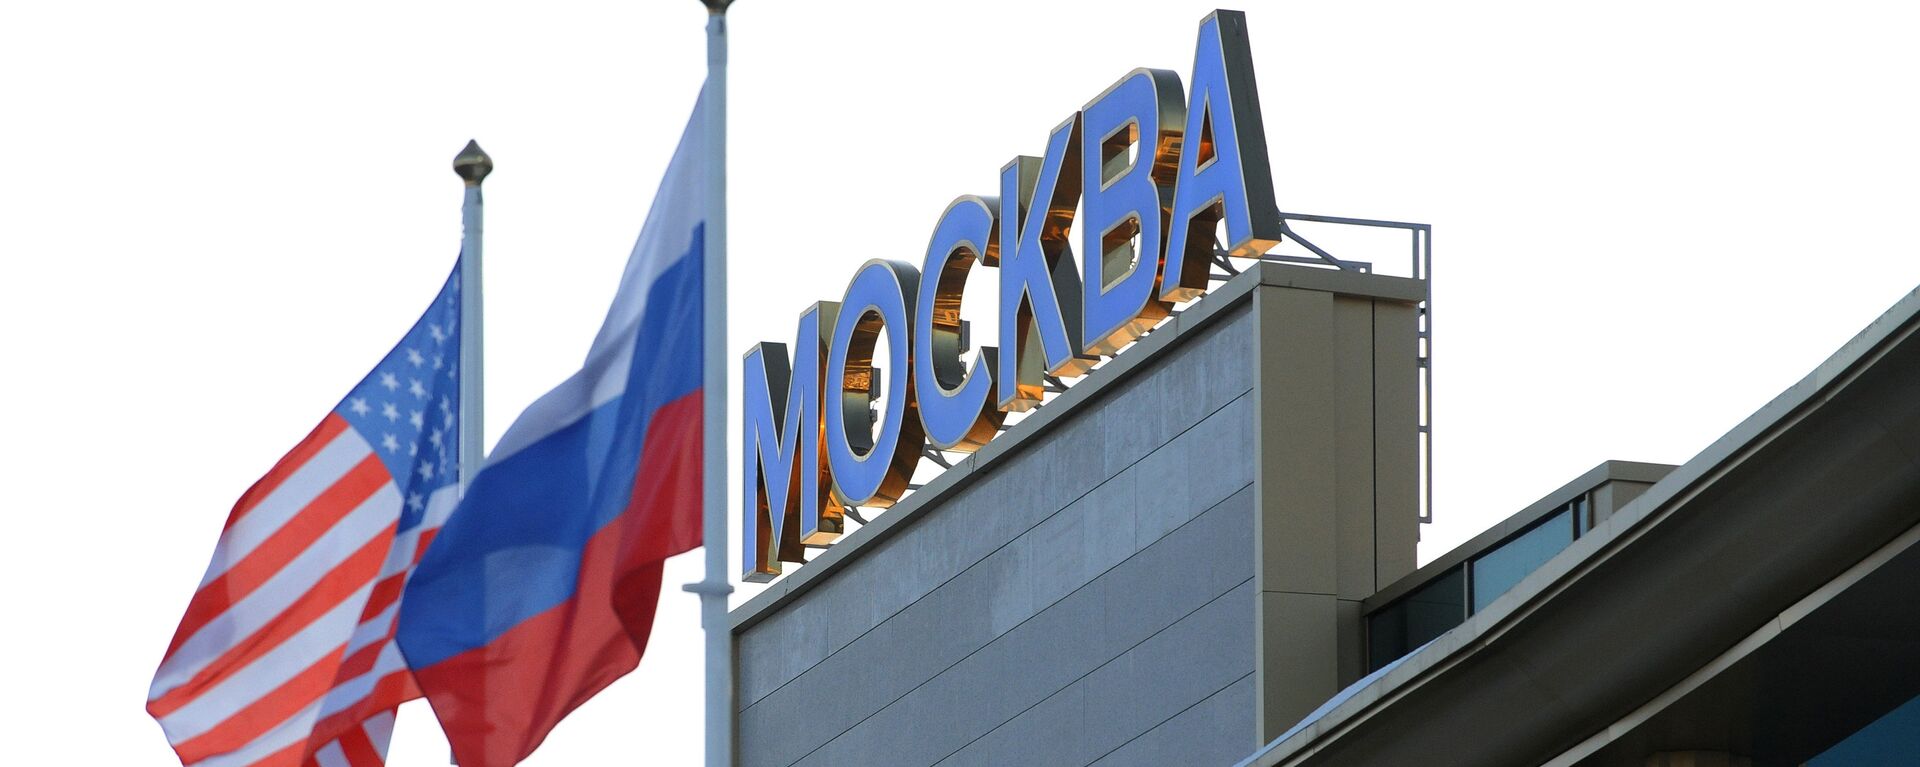 Флаги России и США в аэропорту Внуково-2 - Sputnik Ўзбекистон, 1920, 23.03.2021